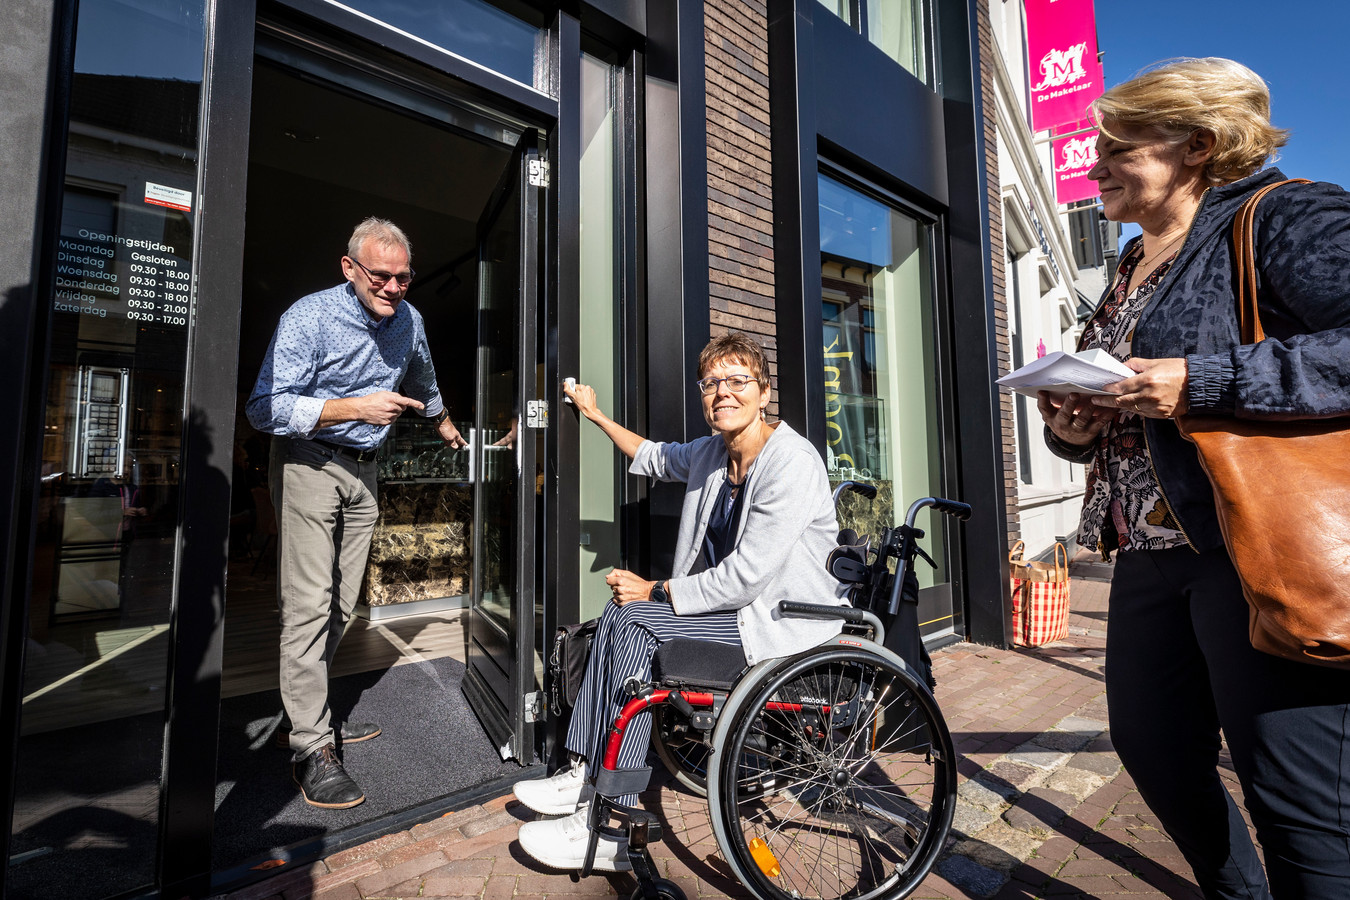 Cadeau kortademigheid stortbui Deurbel met sticker met winkels in Borne toegankelijker maken voor  rolstoelers | Foto | tubantia.nl